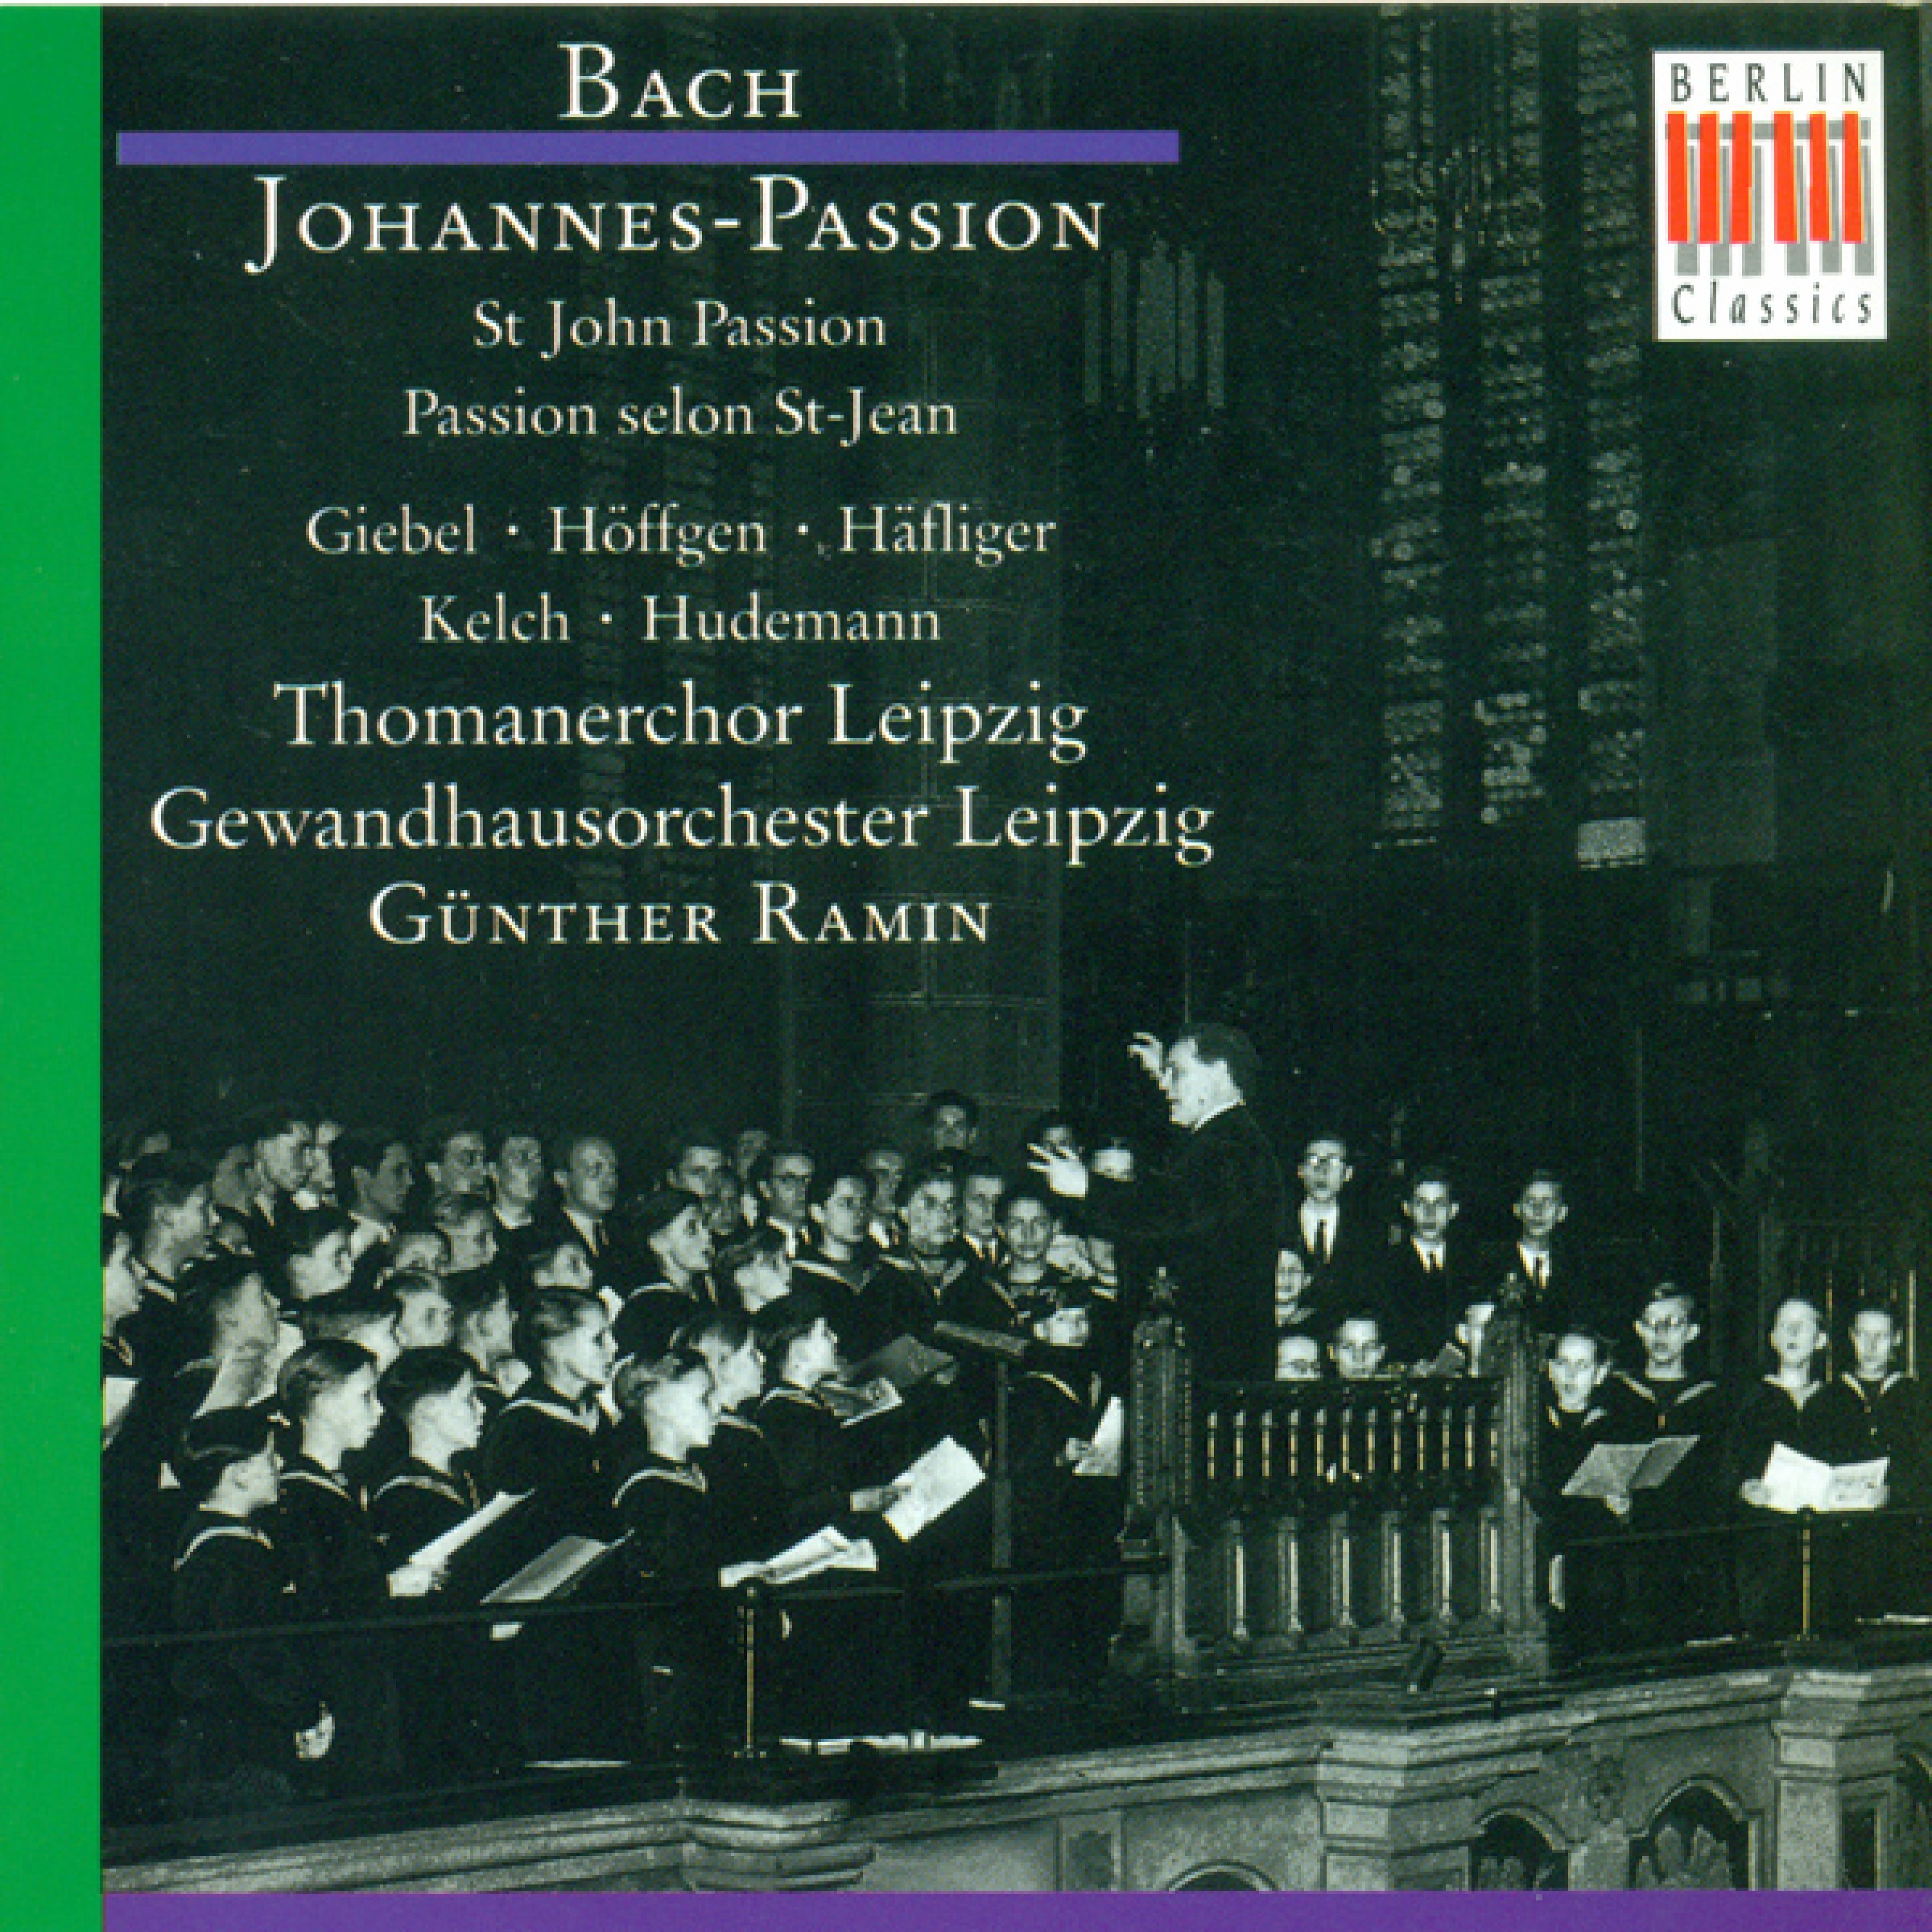 JohannesPassion, BWV 245: Part I  " O gro e Liebe"